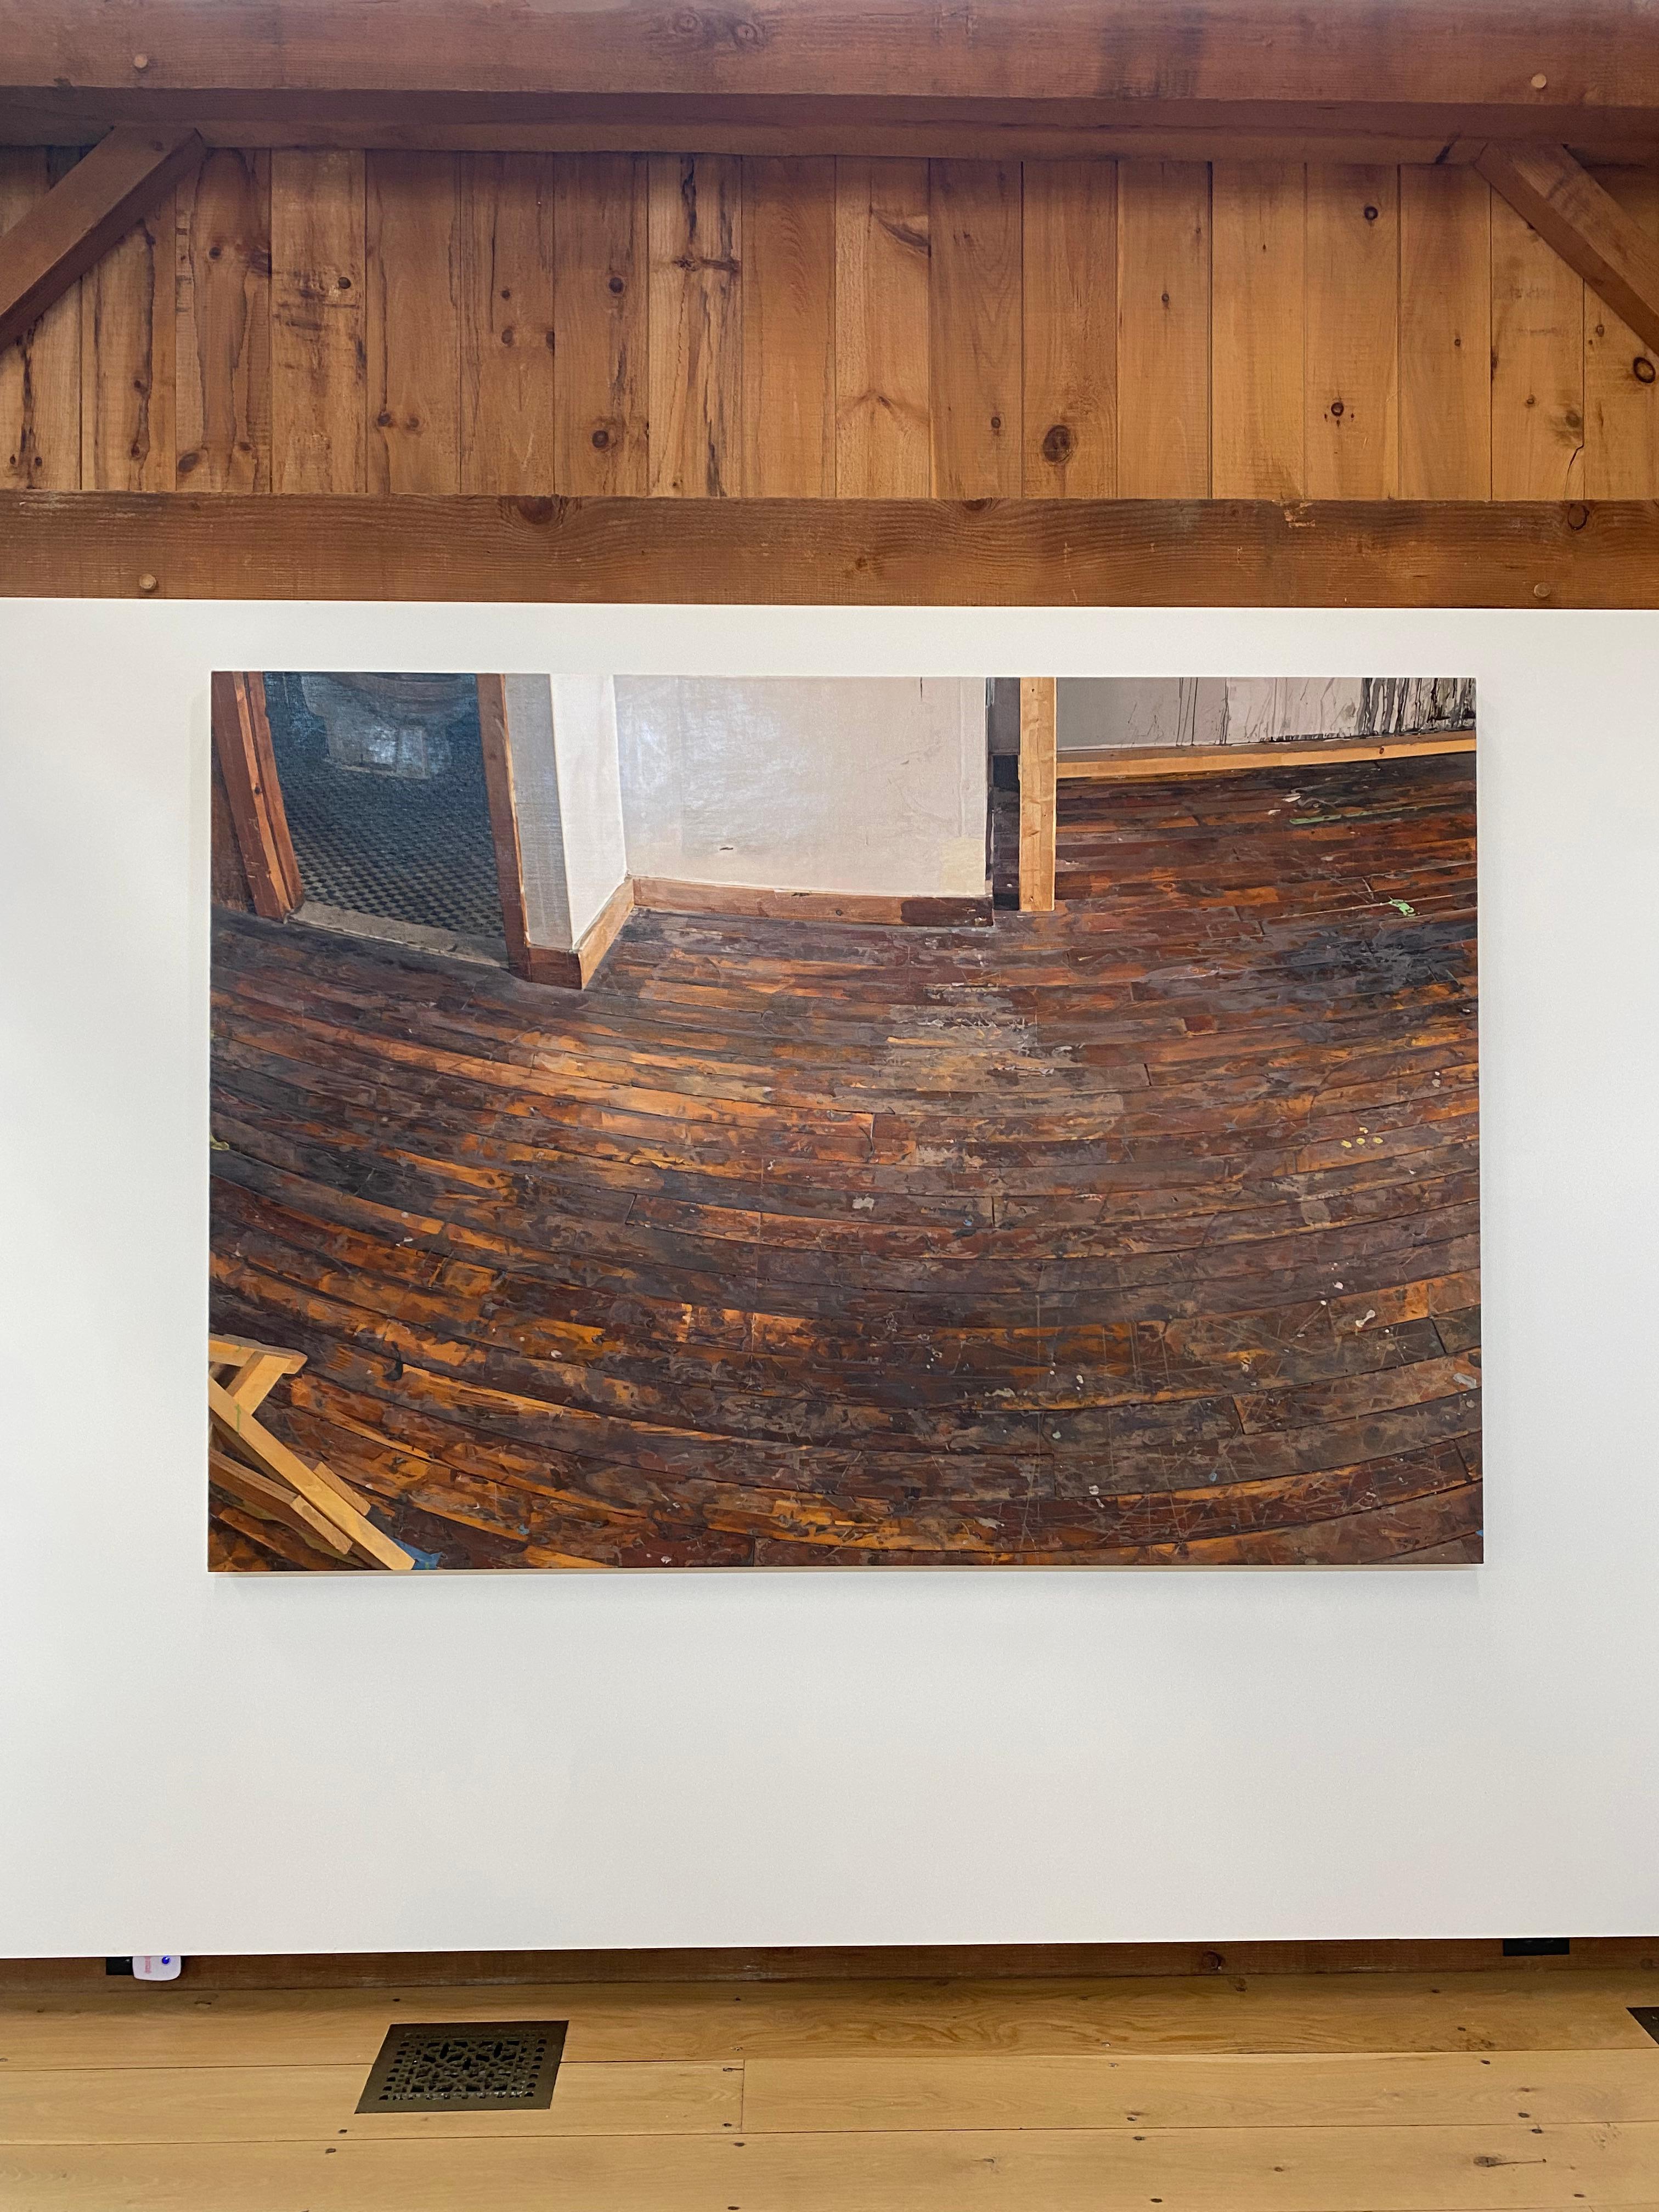 Corner et sol de studio, sol en bois brun, murs blancs, intérieur d'atelier d'art - Painting de Brett Eberhardt